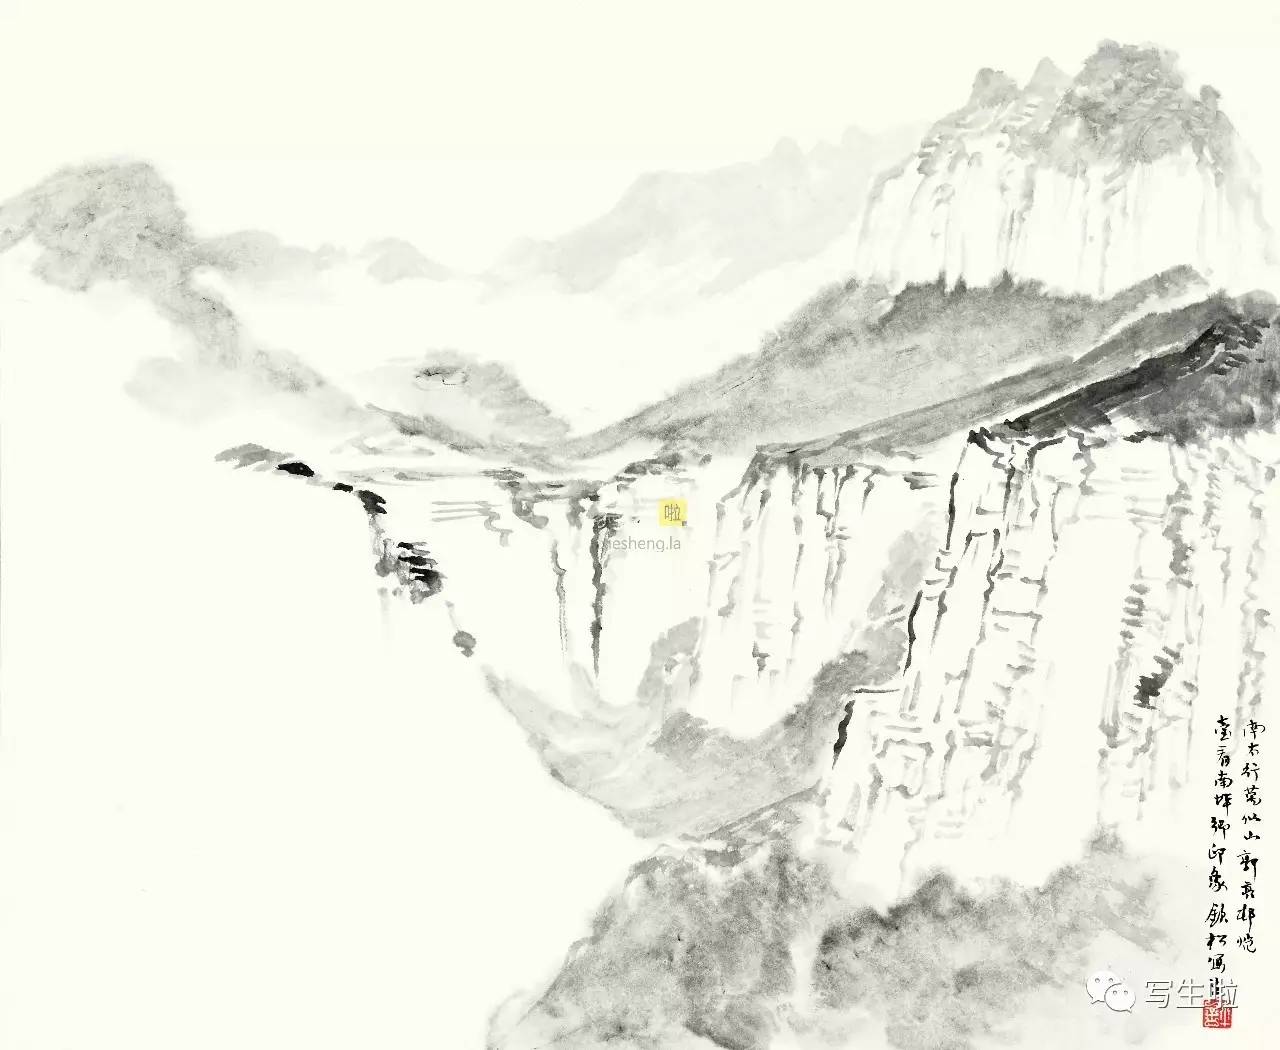 许钦松:在写生中追求现代山水画的意义_搜狐文化_搜狐网